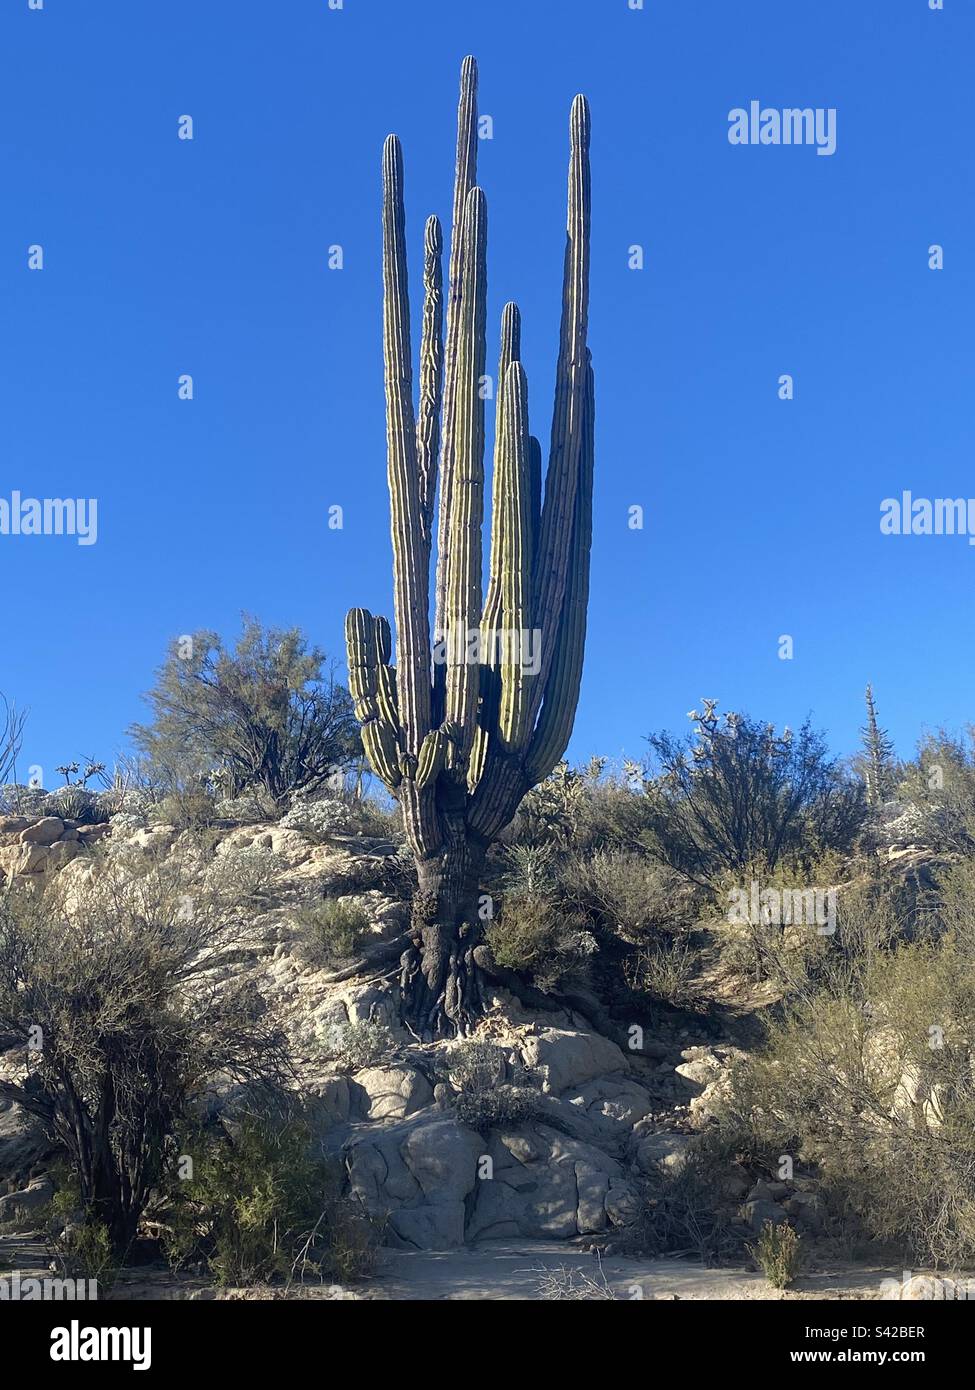 Cardon cactus in Baja Mexico Stock Photo